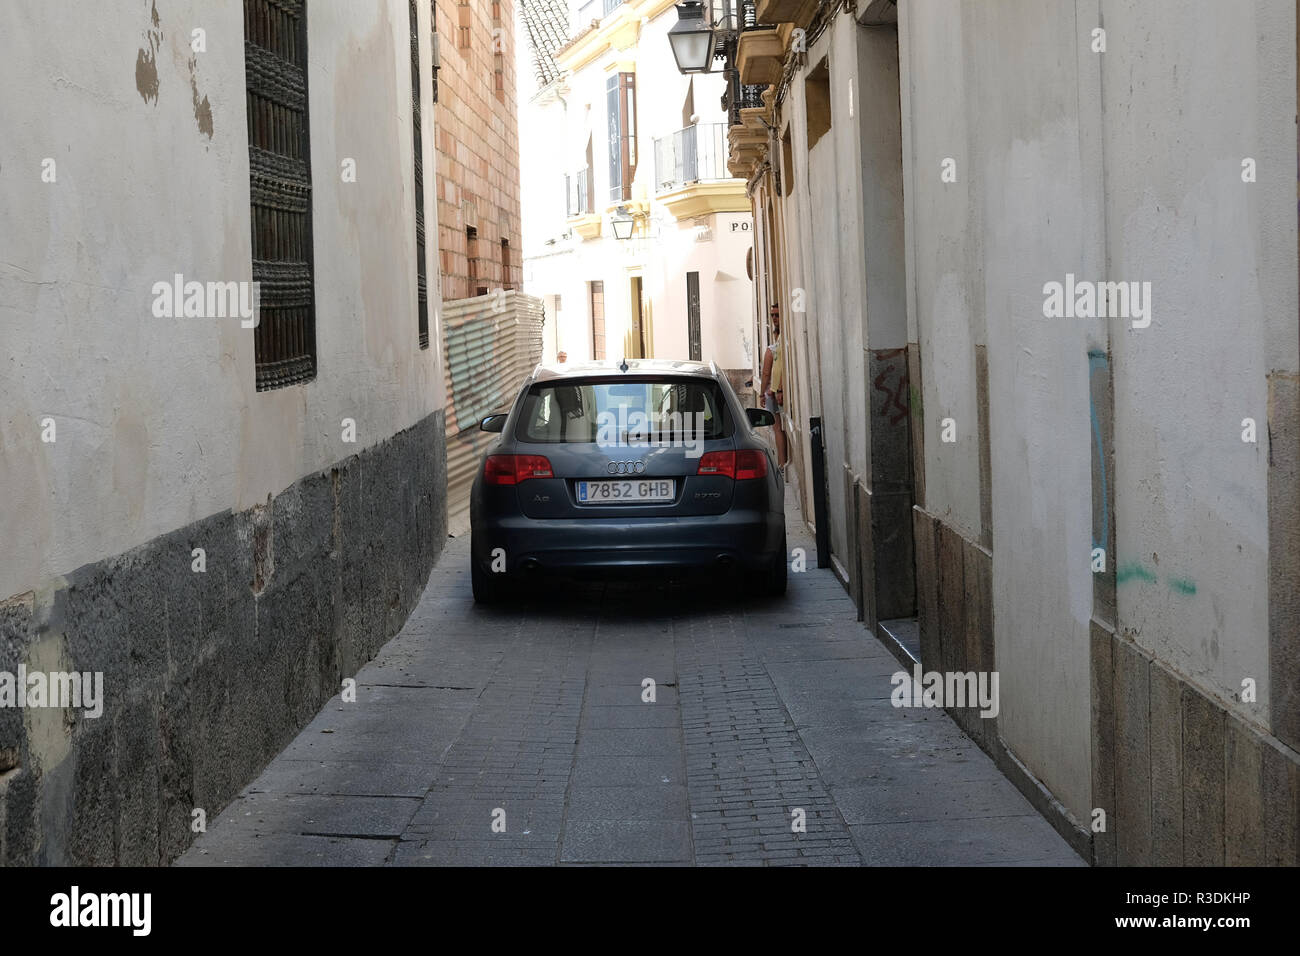 Ein Auto quetscht liegt in einer engen Straße in Spanien Stockfoto